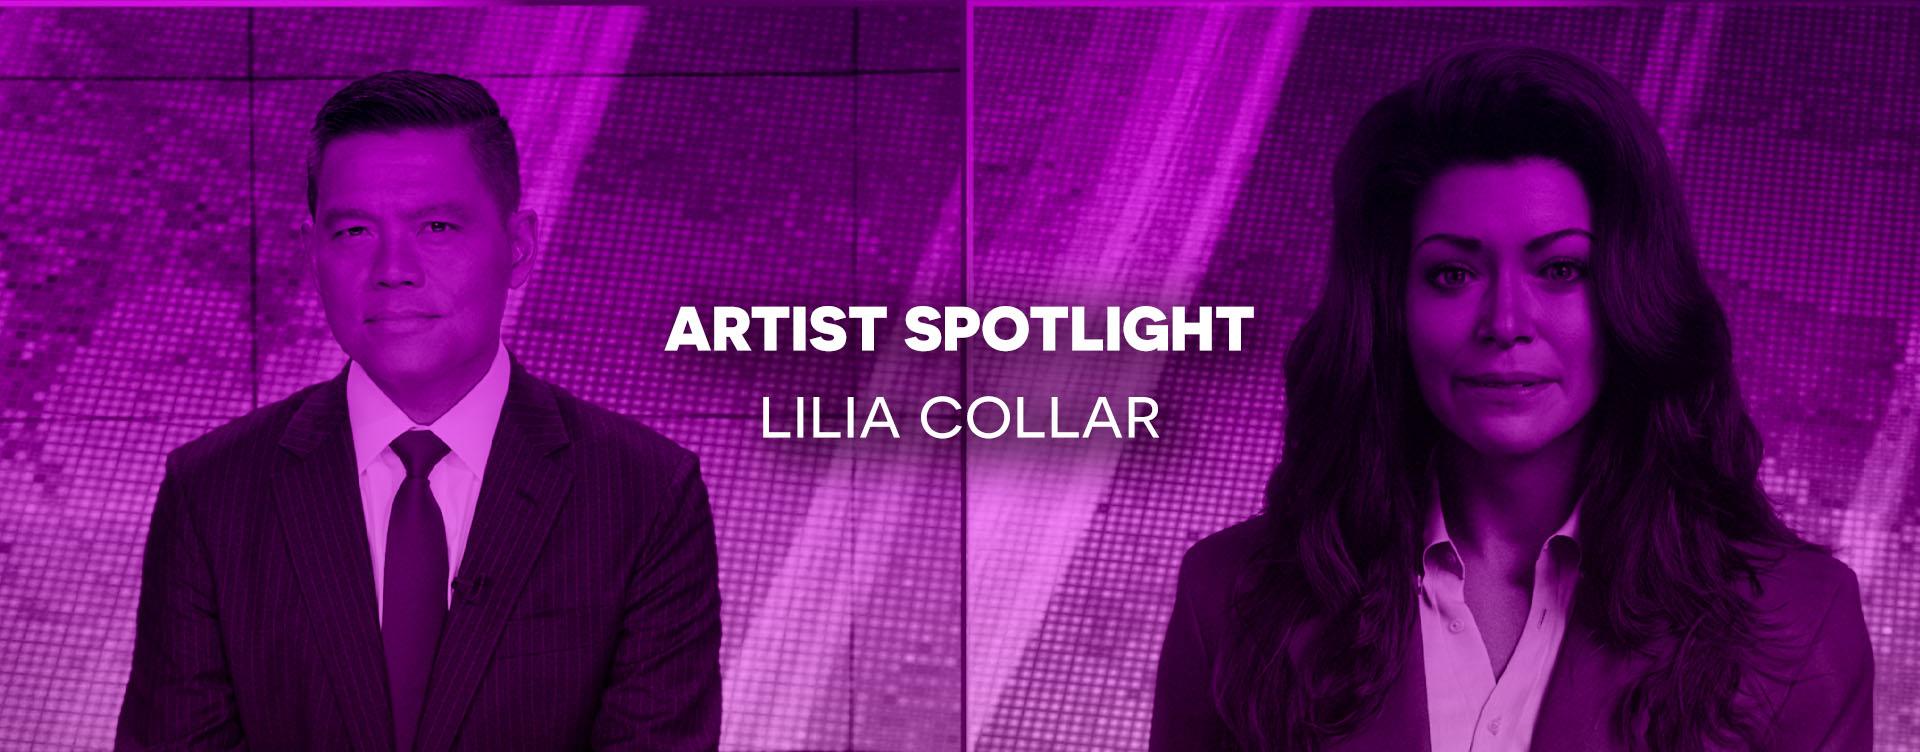 Lilia Collar Artist Spotlight Header